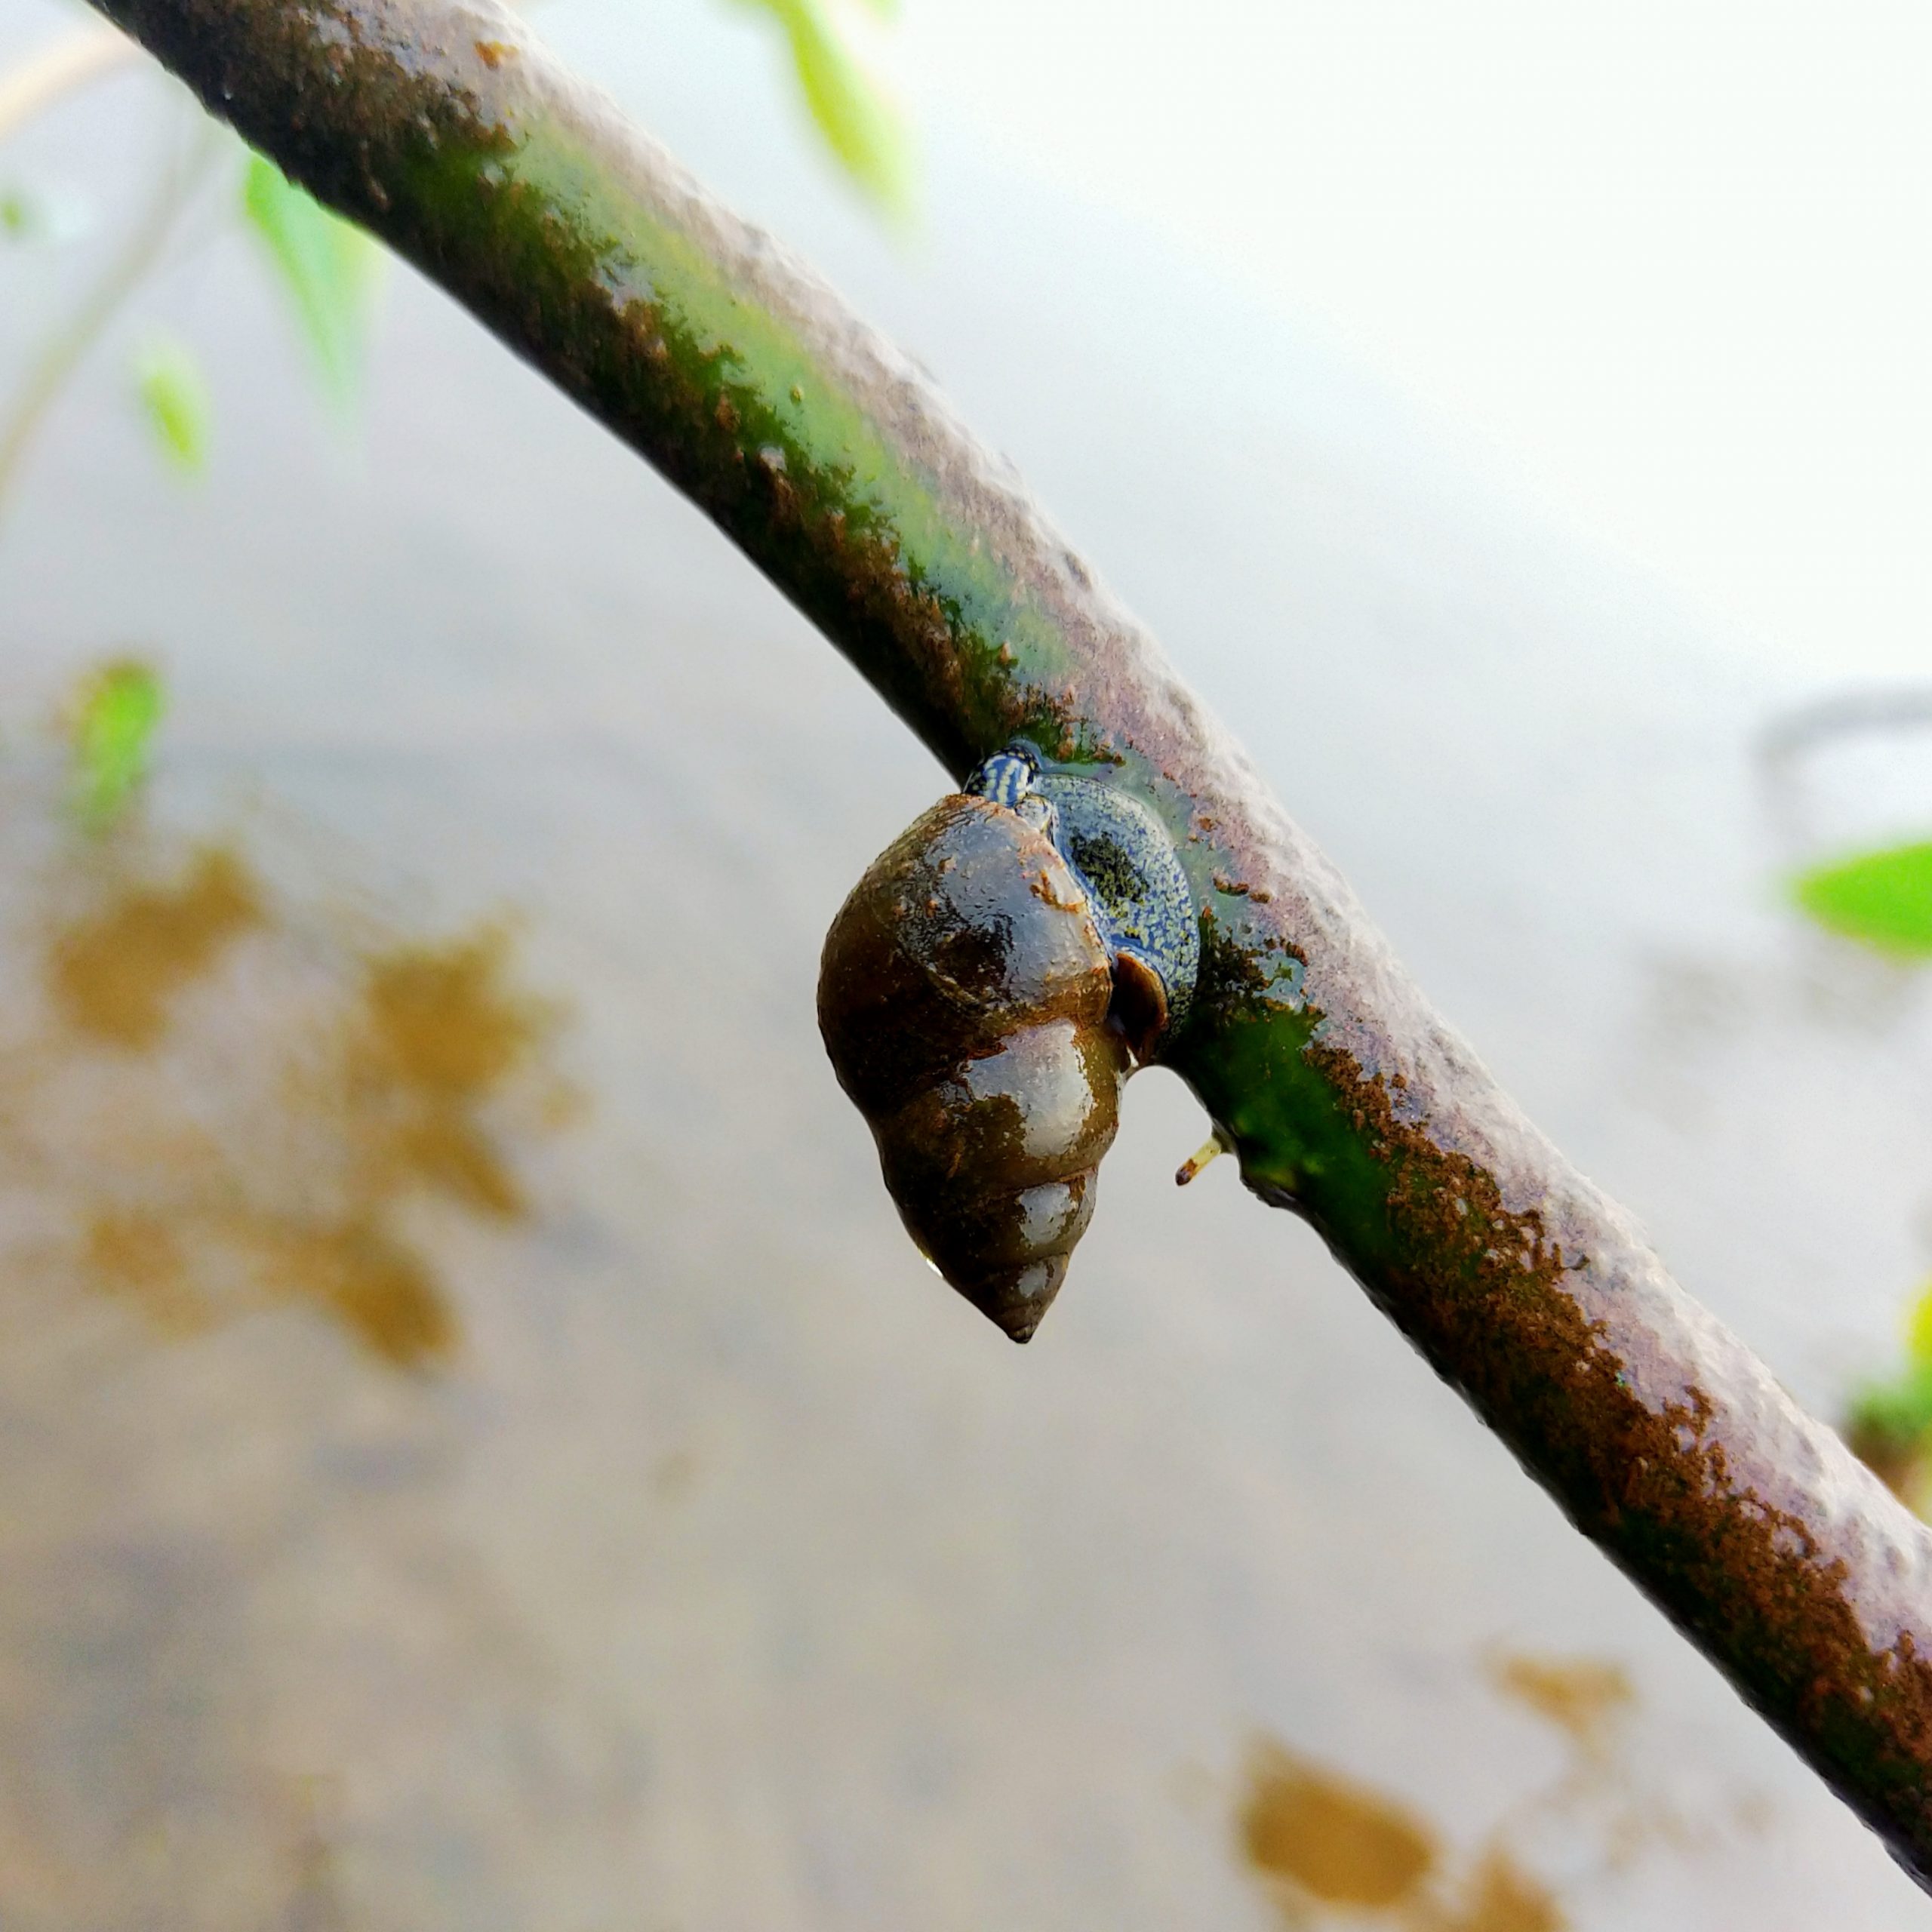 A snail on a branch